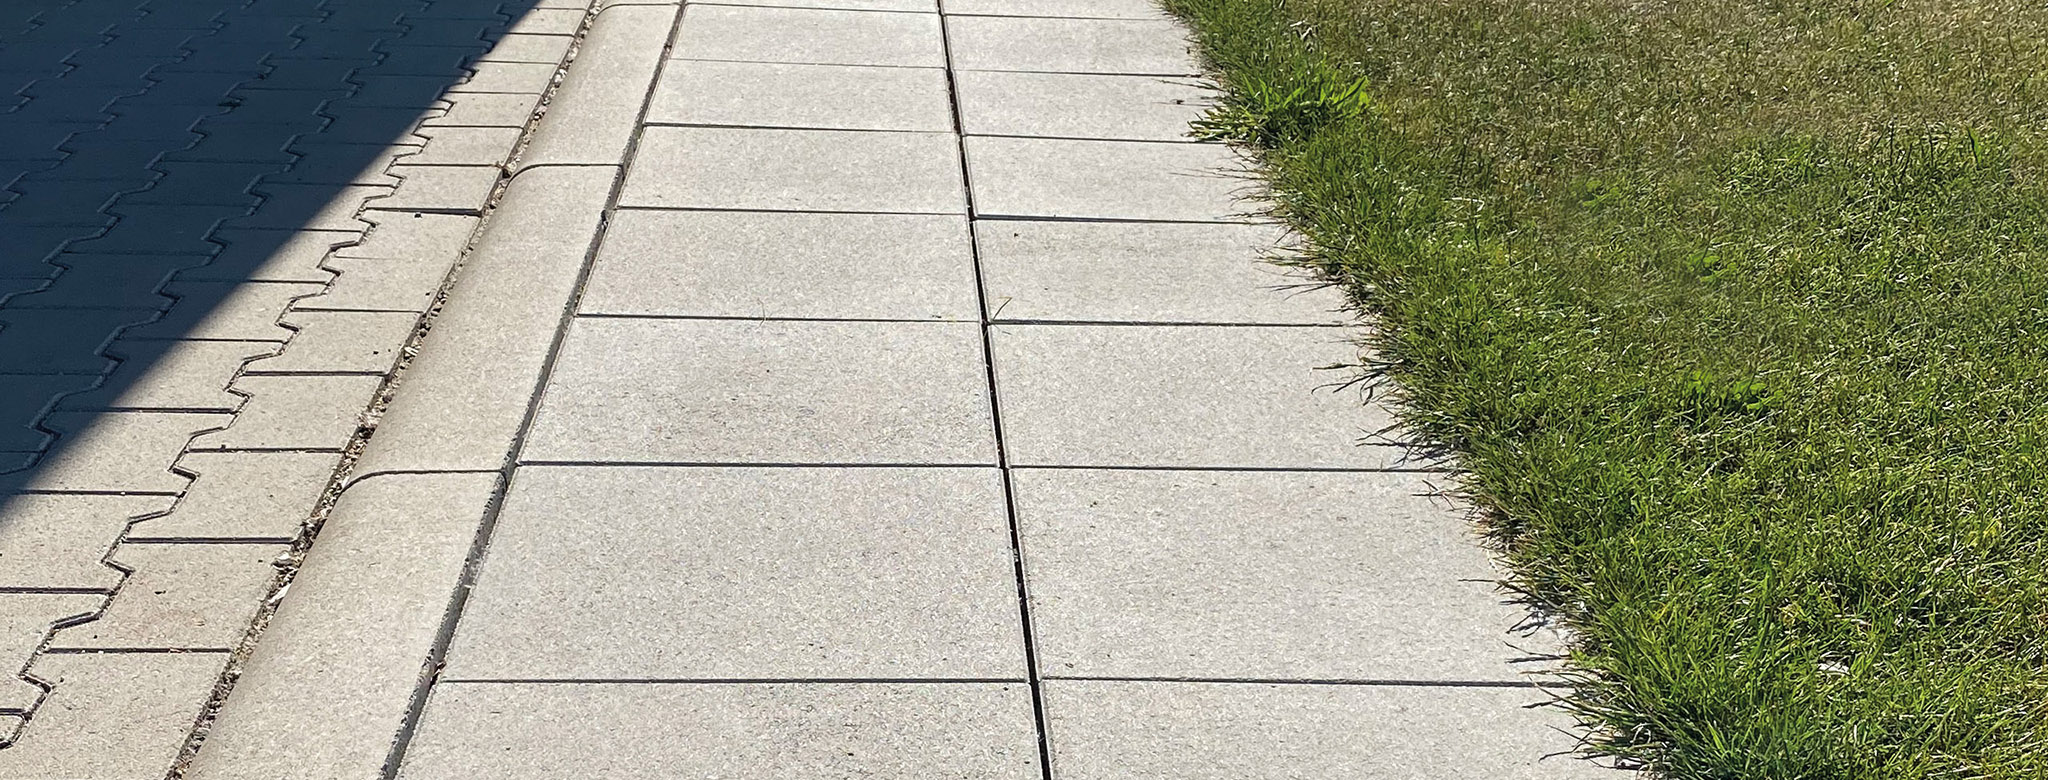 terrasen platen betonform 4 Stück 50x50x5 GLATTE       Formen für Pflaster 